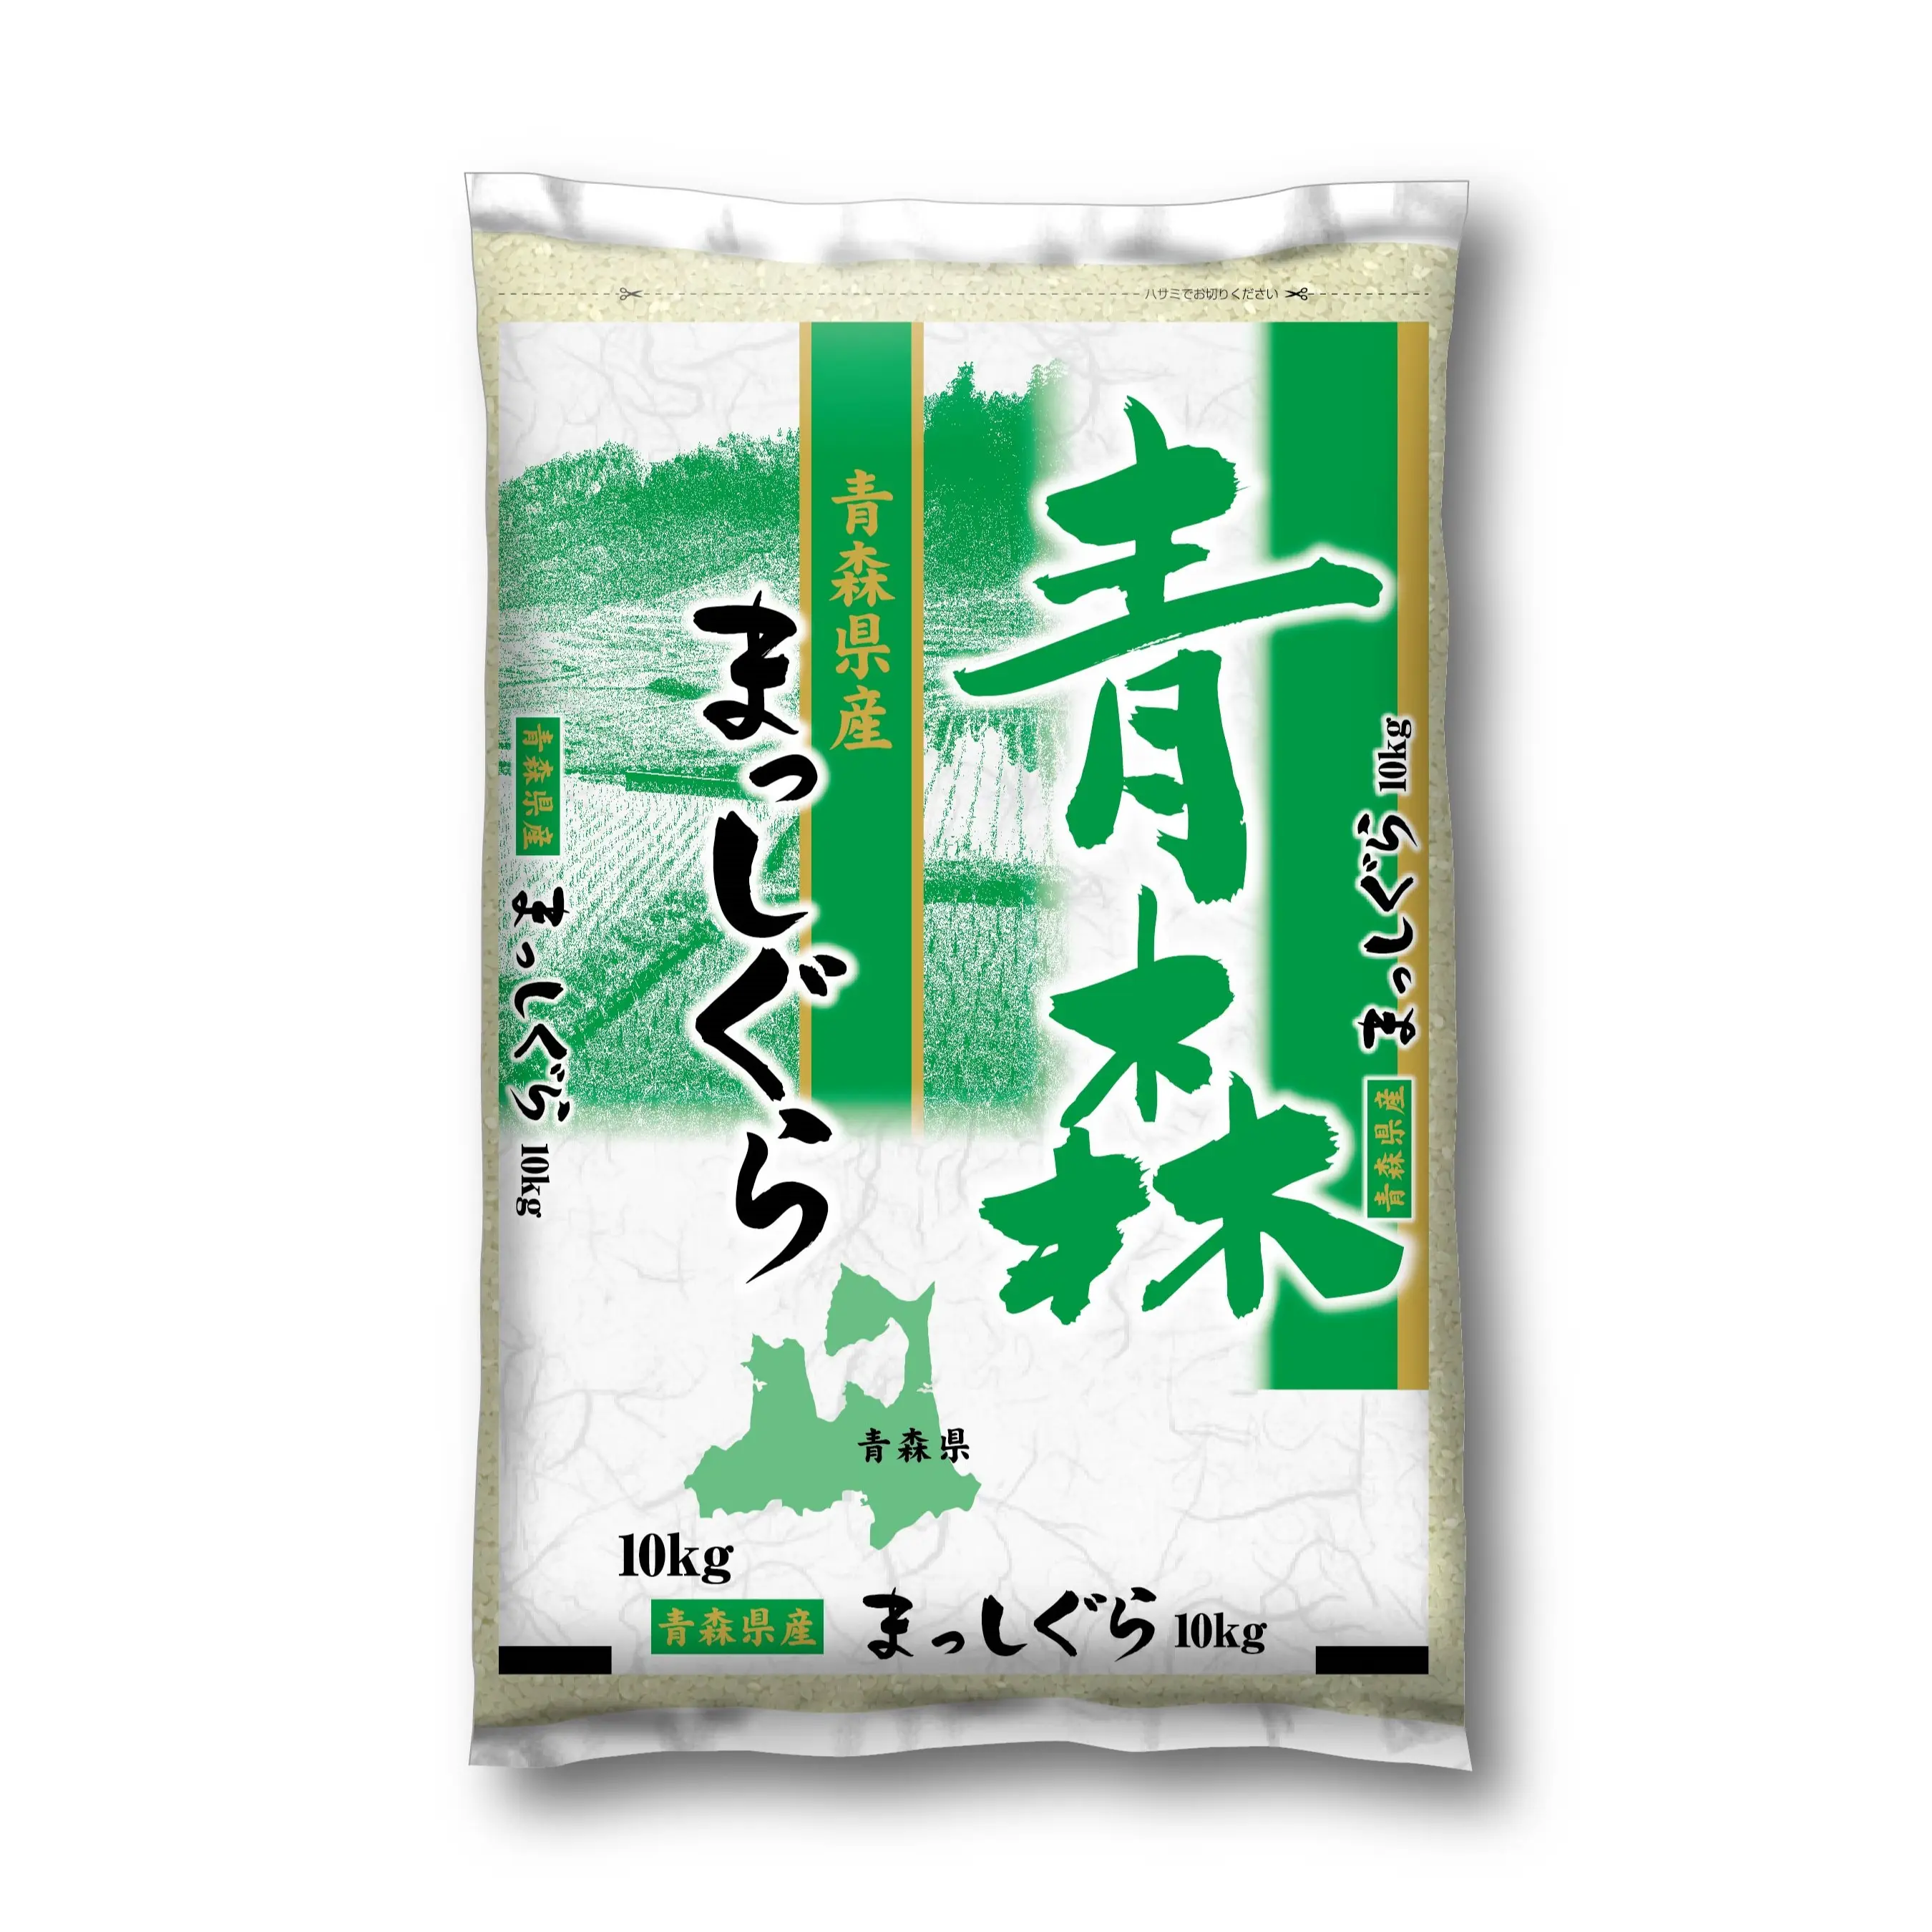 Aomori Masshigura pemasok grosir asli bumbu nasi termurah